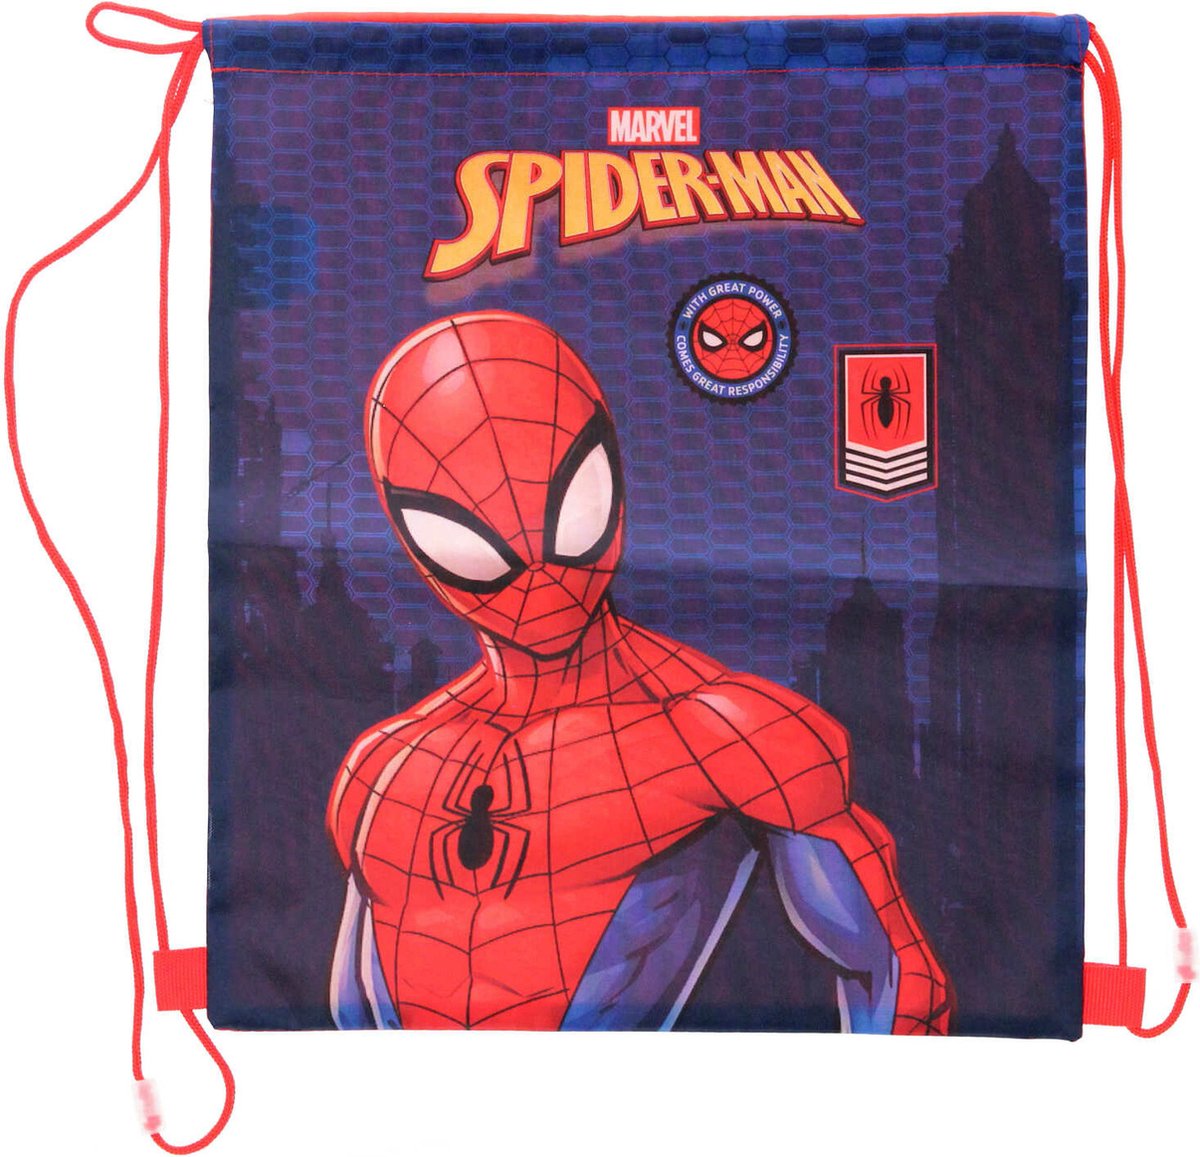 Marvel Spiderman gymtas/rugzak/rugtas voor kinderen - blauw/rood - polyester - 40 x 35 cm - Marvel